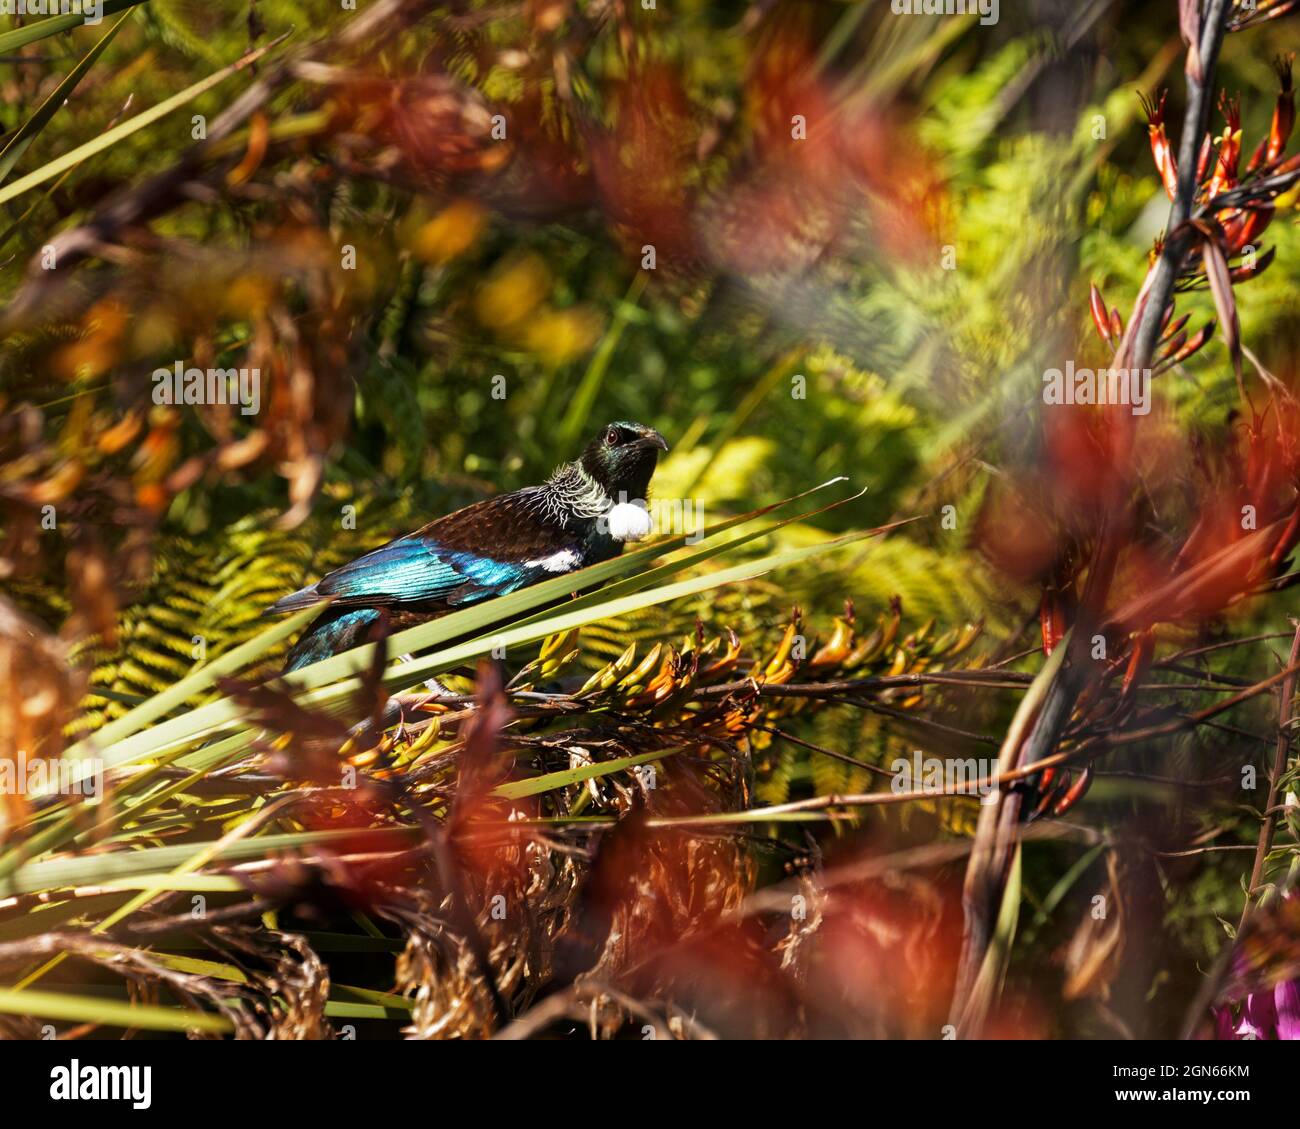 TUI, endemischer Singvögel Neuseelands, auf einer Flachspflanze, die in Richtung Kamera schaut Stockfoto